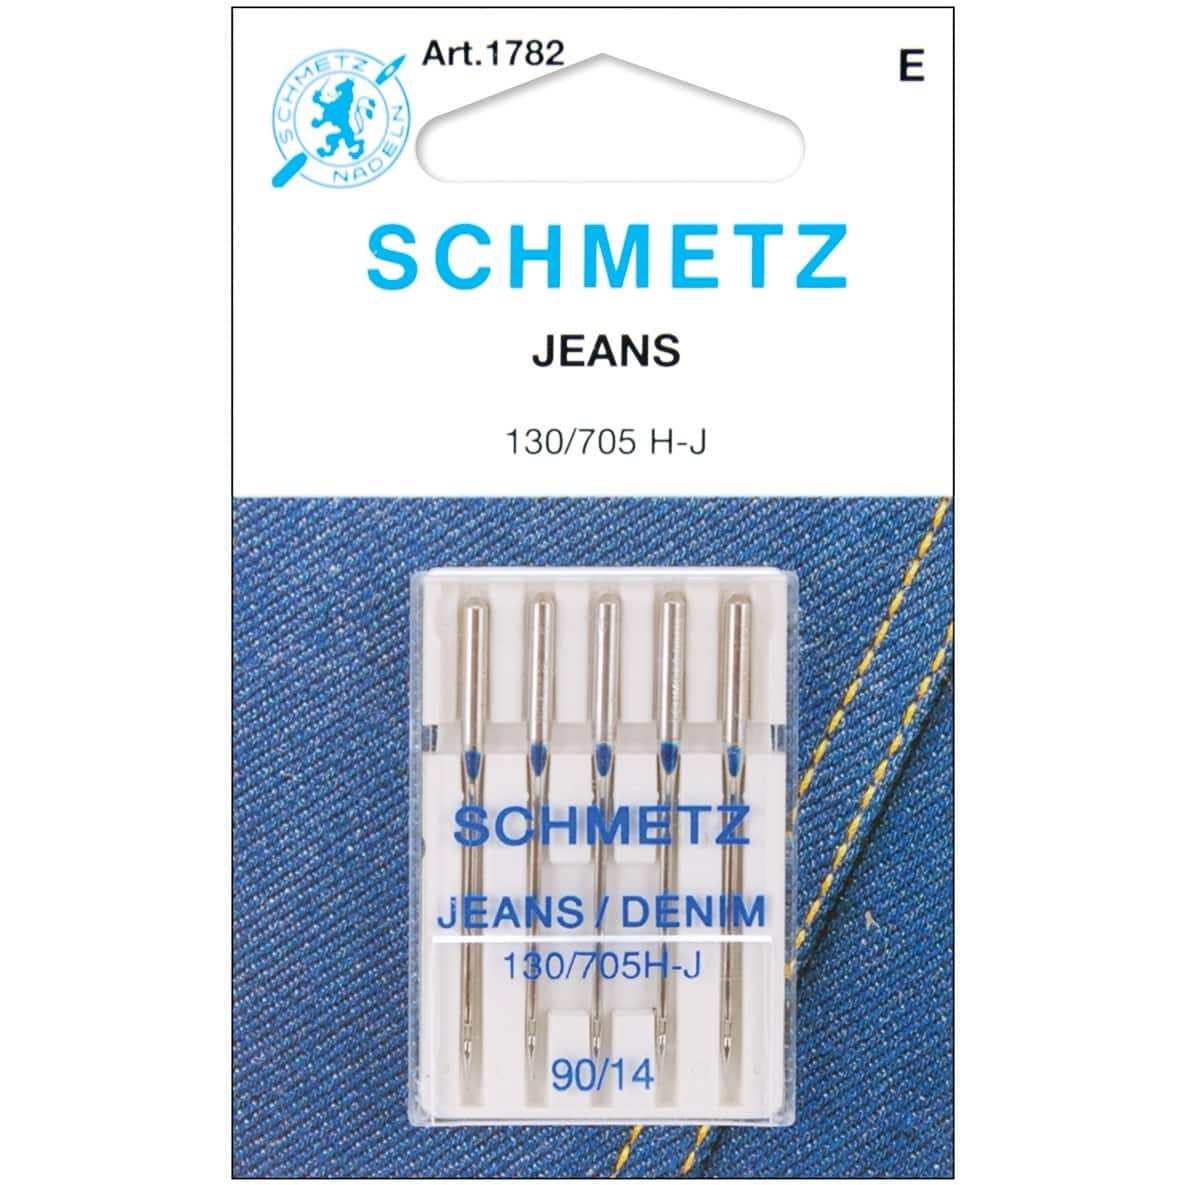 Euro-Notions Schmetz Jean &#x26; Denim Machine Needles, 5ct.